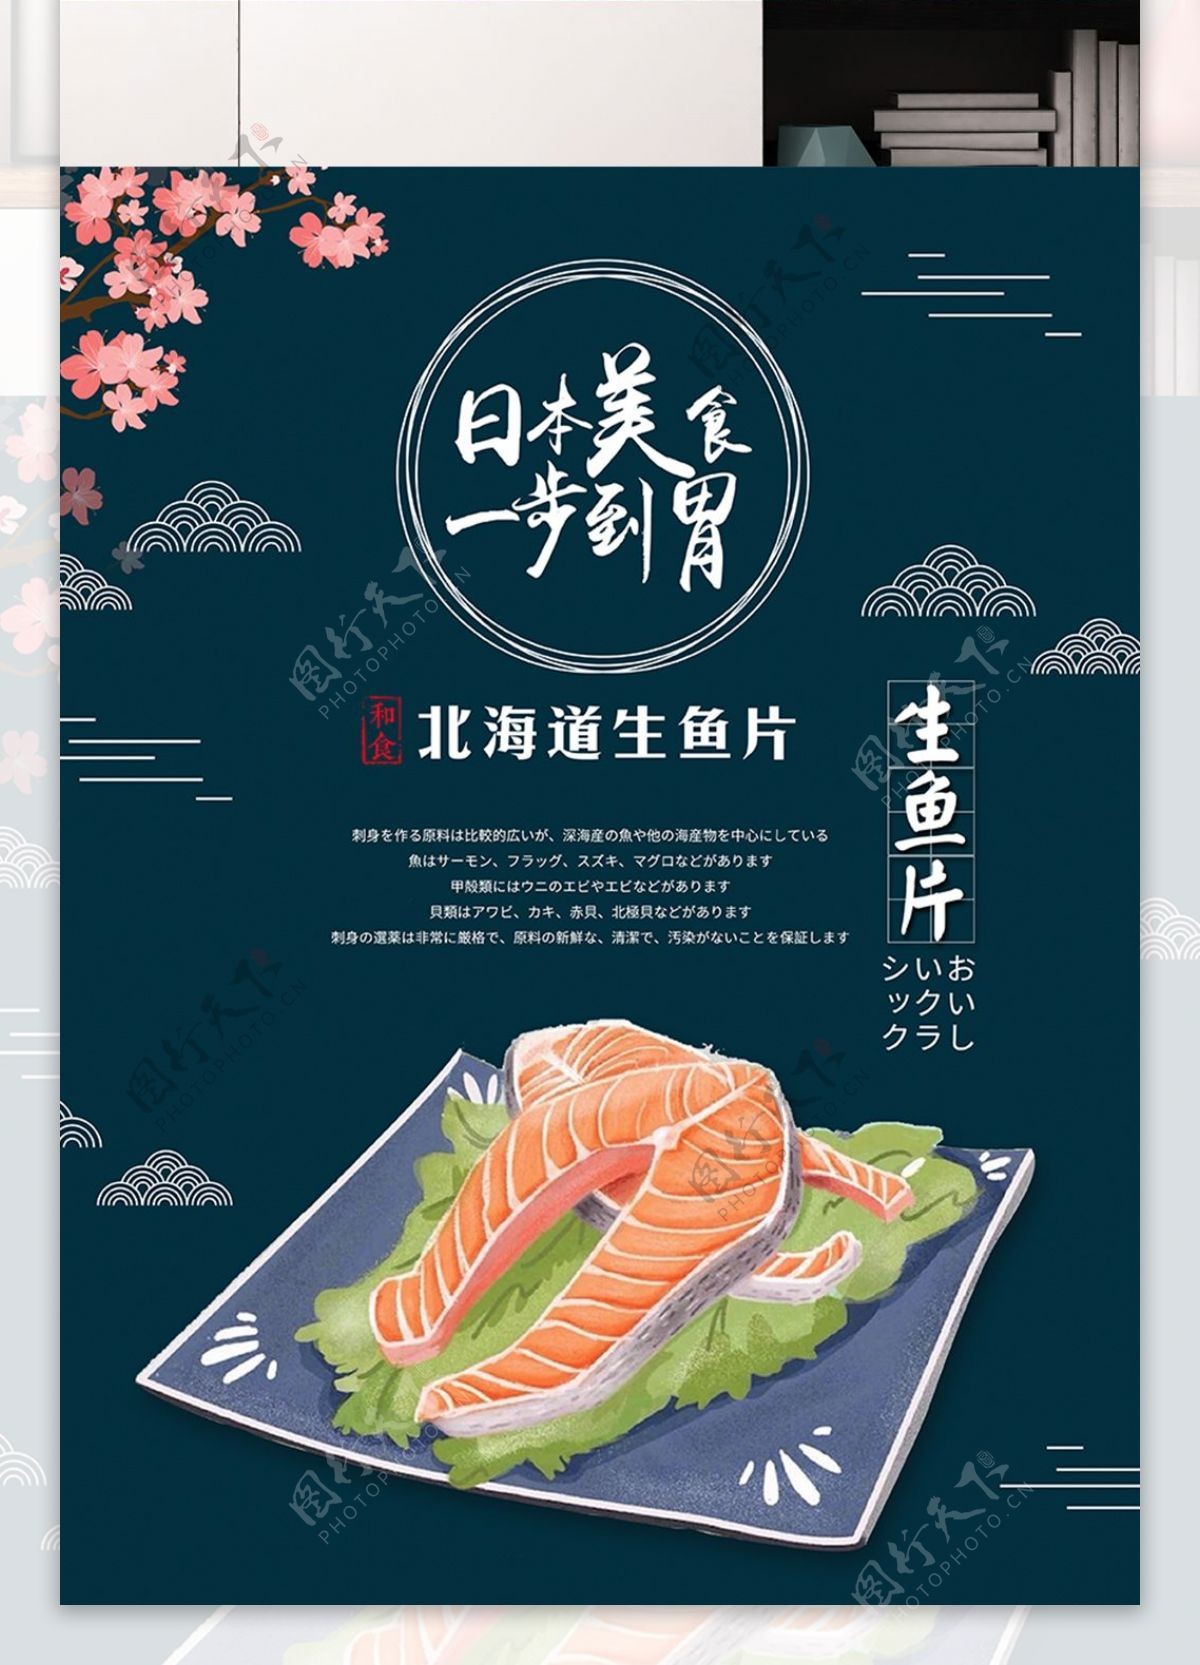 原创手绘简约日本生鱼片海报